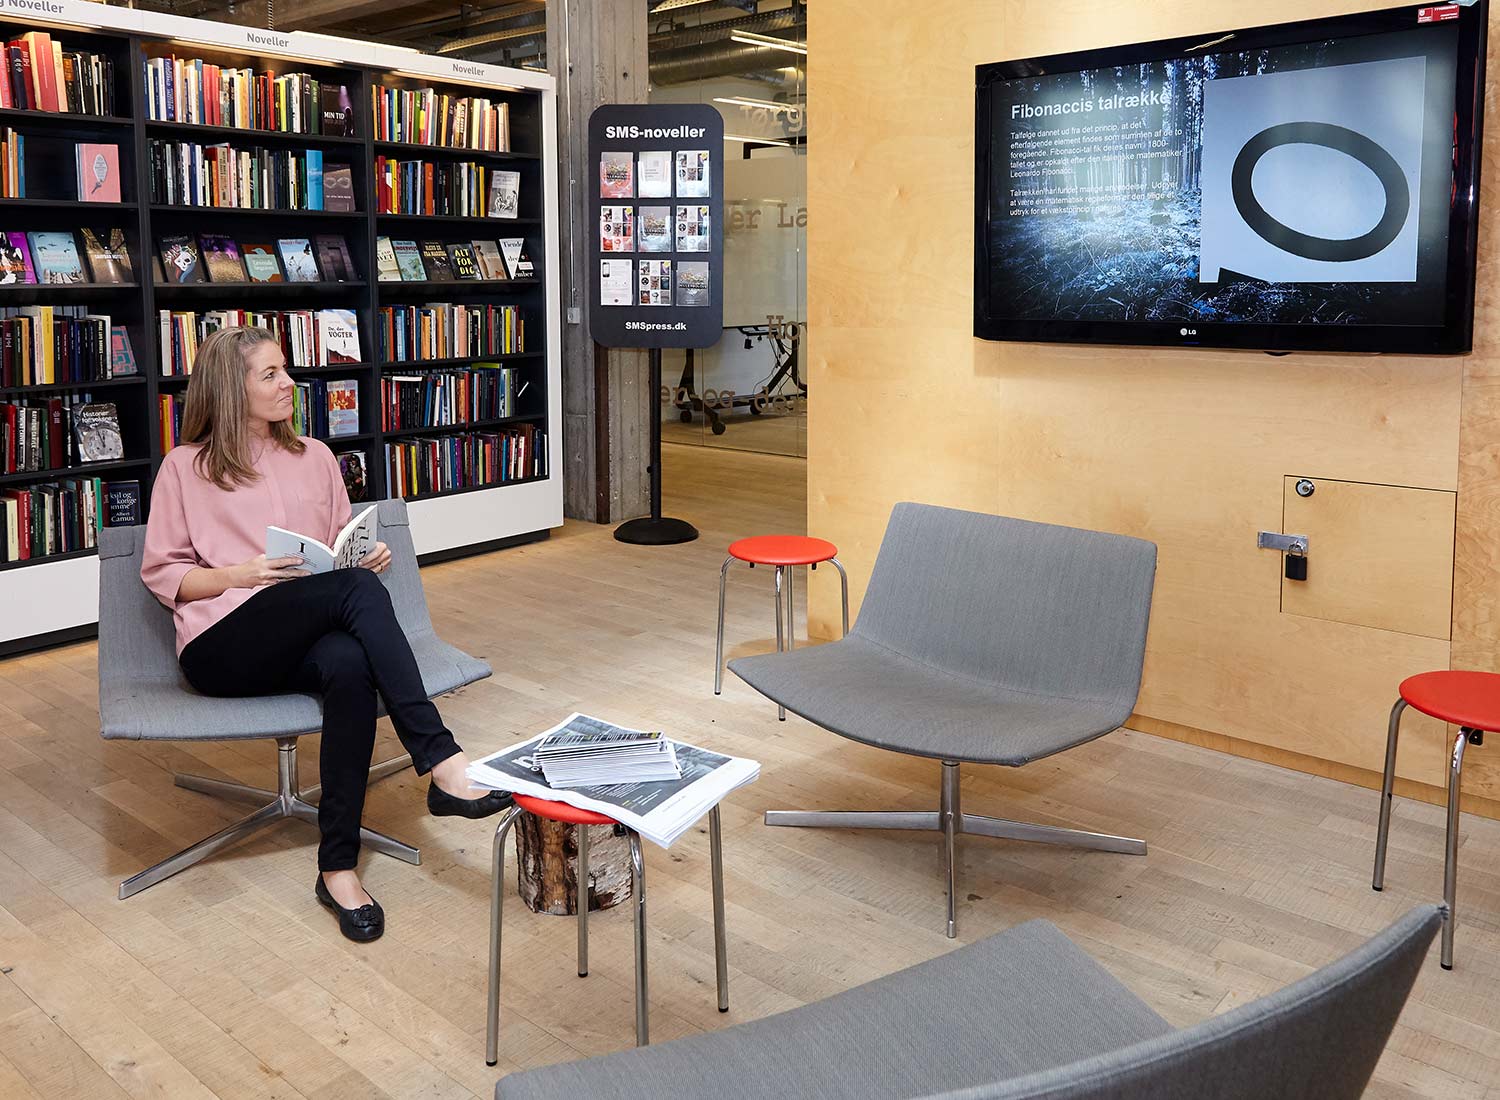 Vrouw in bibliotheek die naar scherm van transformativeLibrary kijkt